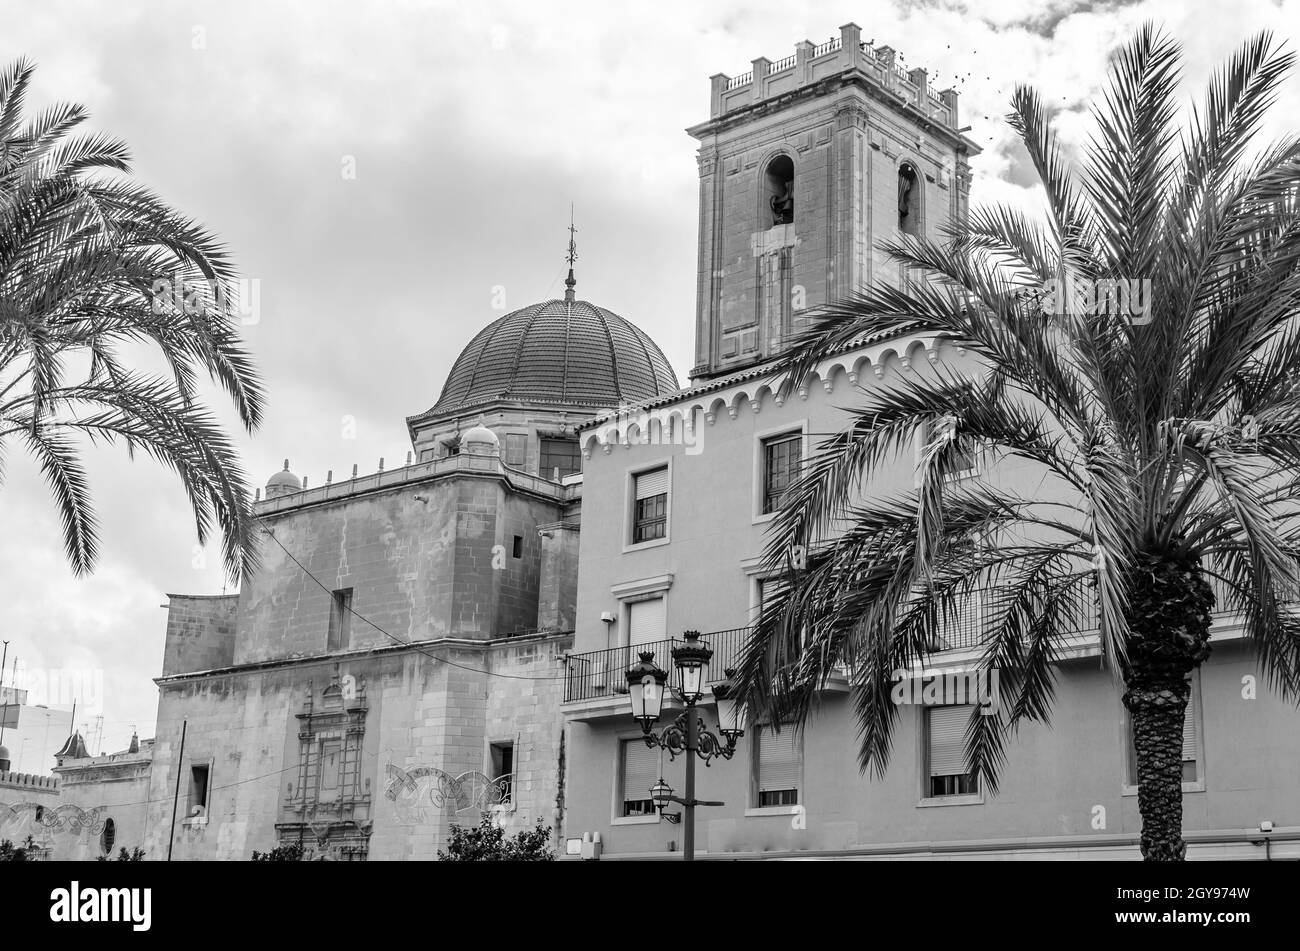 Vue sur la basilique baroque de la ville d'Elche, province d'Alicante, Espagne; image en noir et blanc Banque D'Images